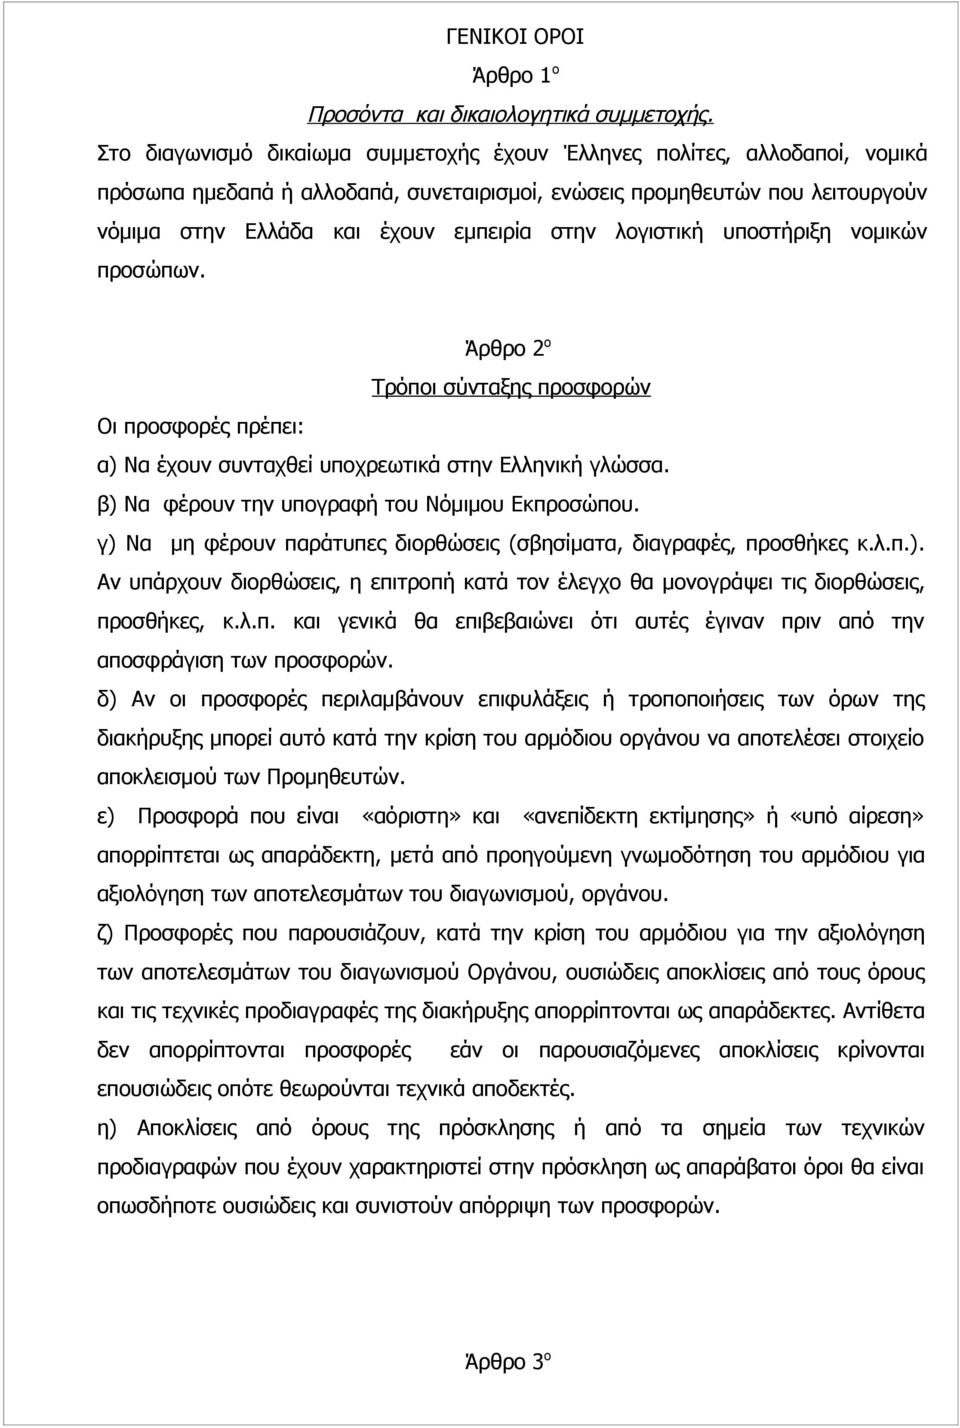 λογιστική υποστήριξη νομικών προσώπων. Άρθρο 2 ο Τρόποι σύνταξης προσφορών Οι προσφορές πρέπει: α) Να έχουν συνταχθεί υποχρεωτικά στην Ελληνική γλώσσα.